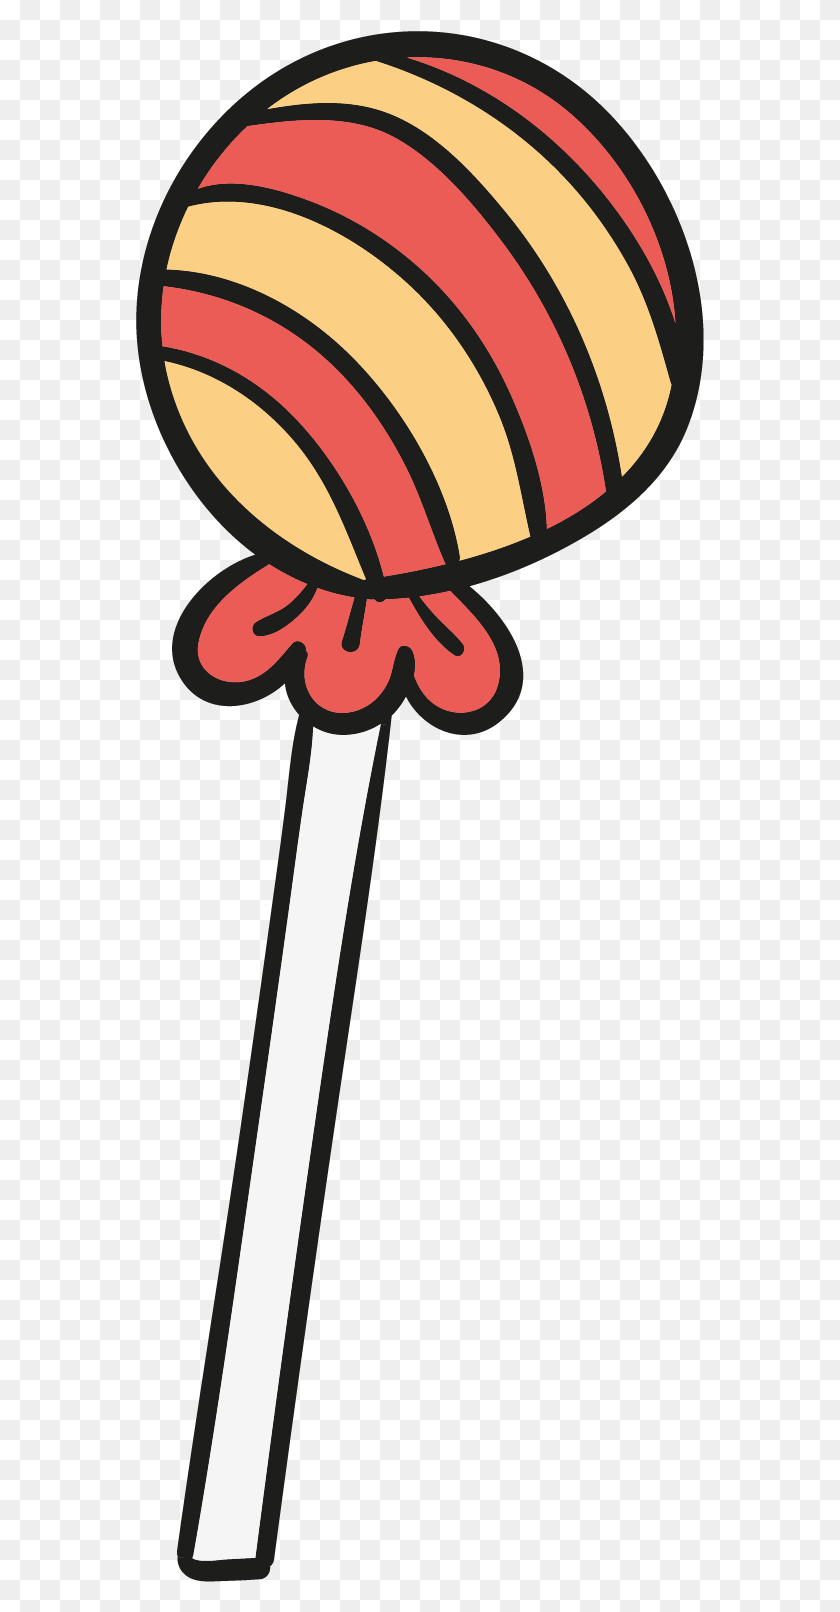 569x1552 Lollipop Cartoon Candy Clip Art Lollipop Cartoon Candy, Food, Pin, Steamer HD PNG Download